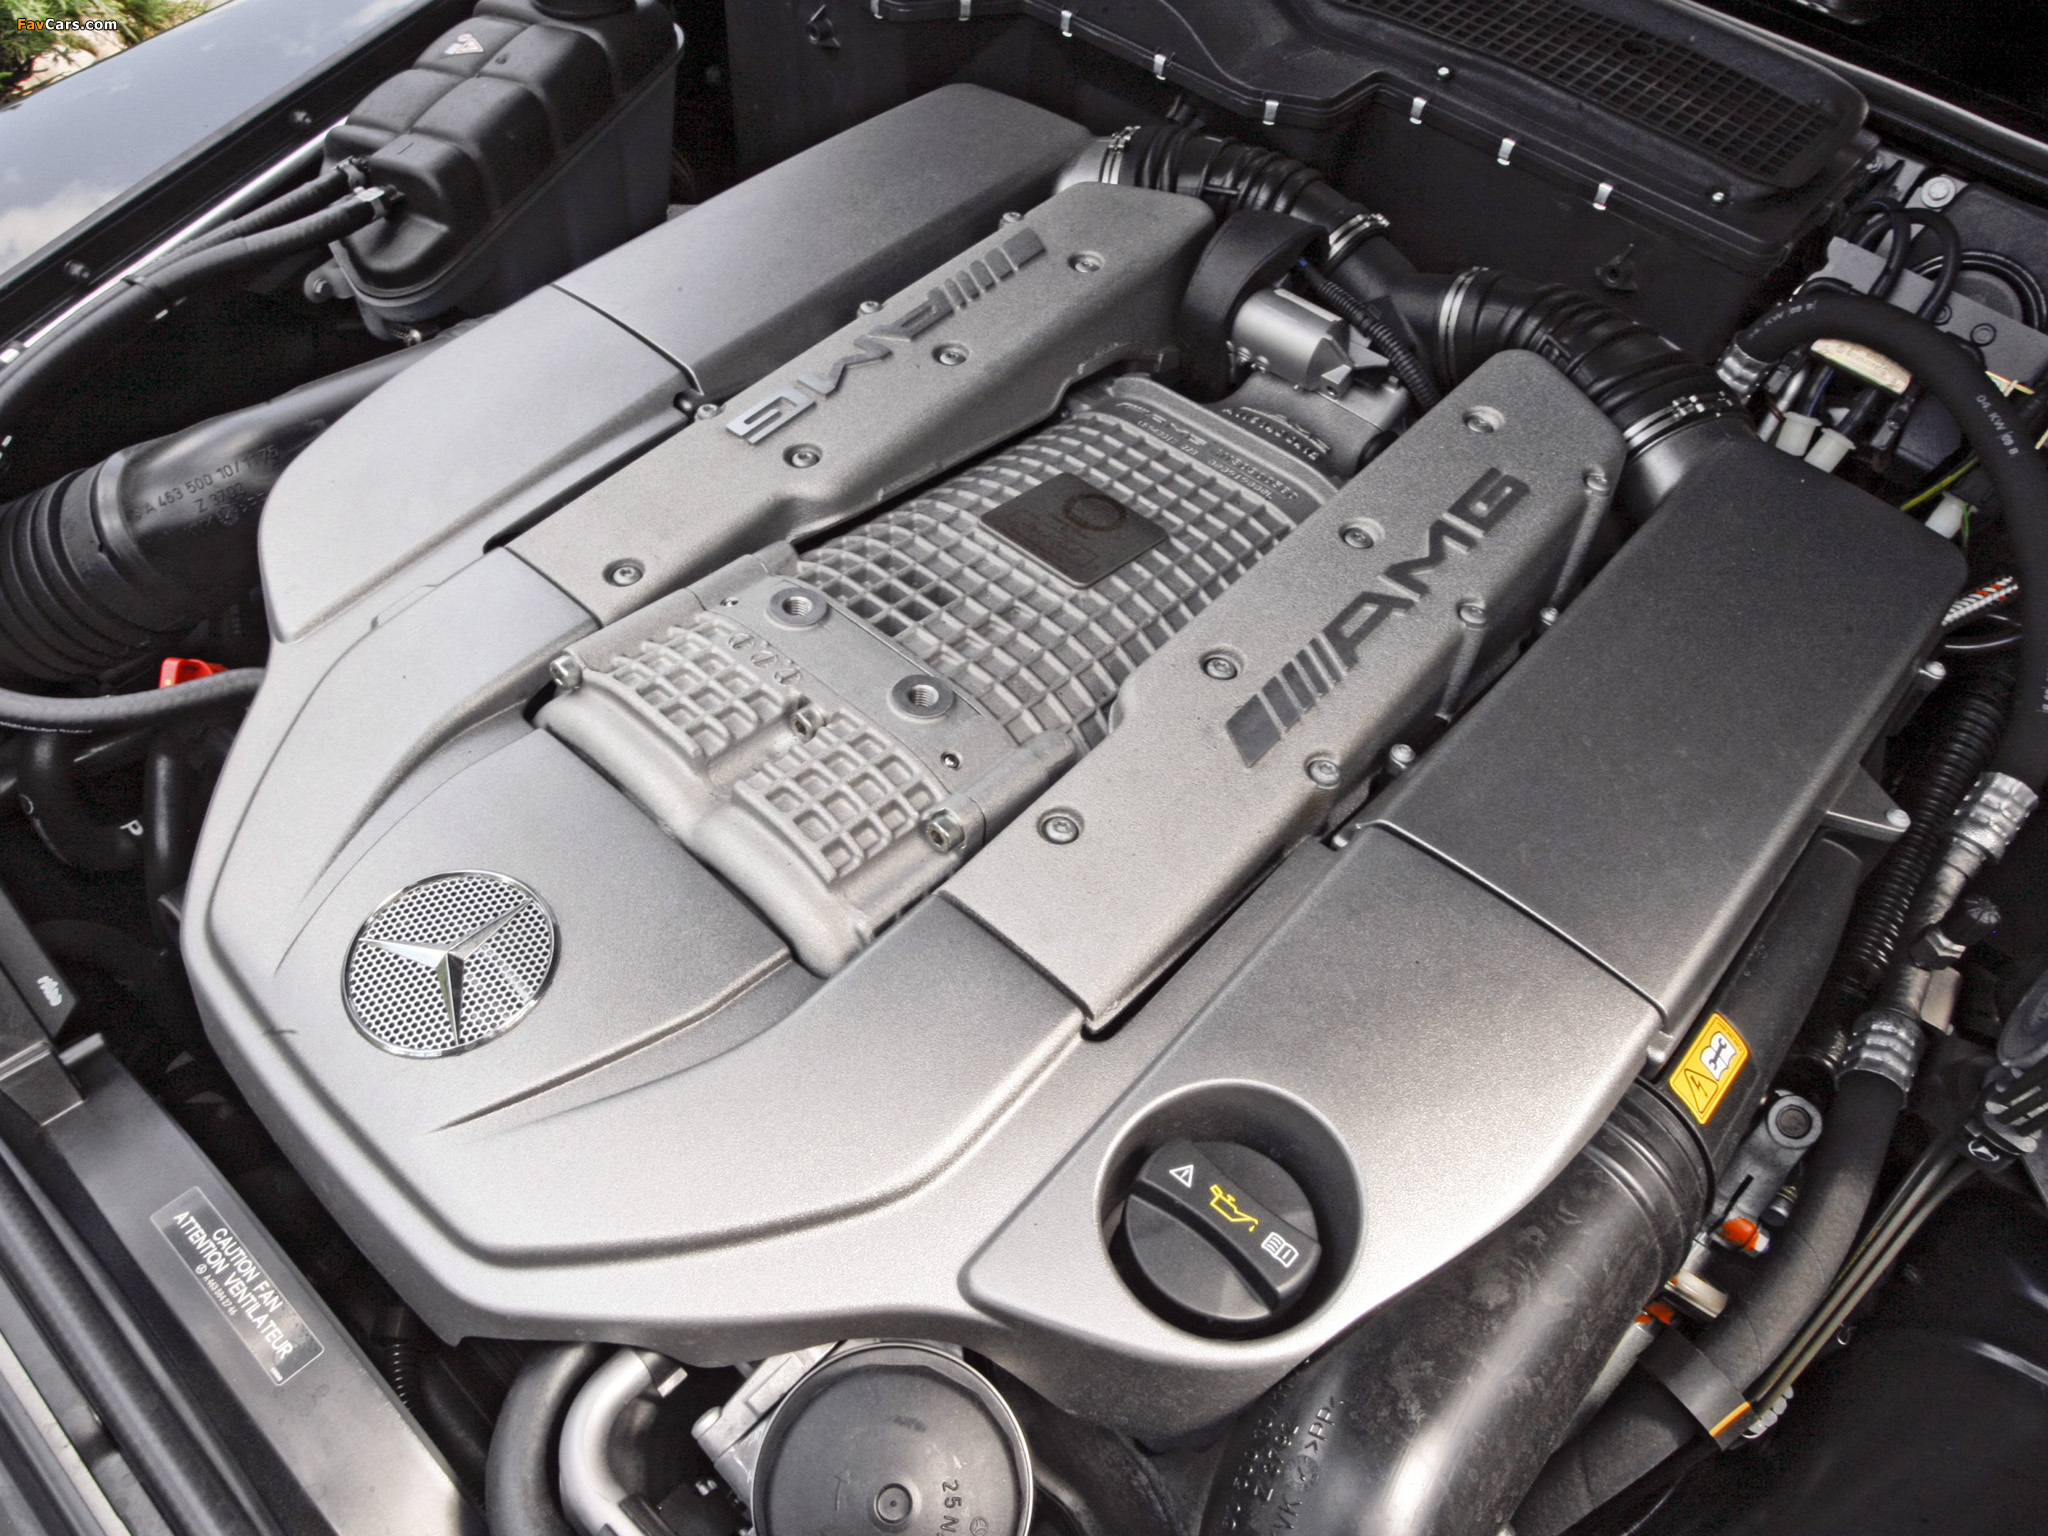 Мотор гелика. Двигатель Мерседес g55 AMG. Mercedes-Benz g 55 Kompressor AMG (w463). G65 AMG мотор. Mercedes Benz g55 AMG 2008 года.